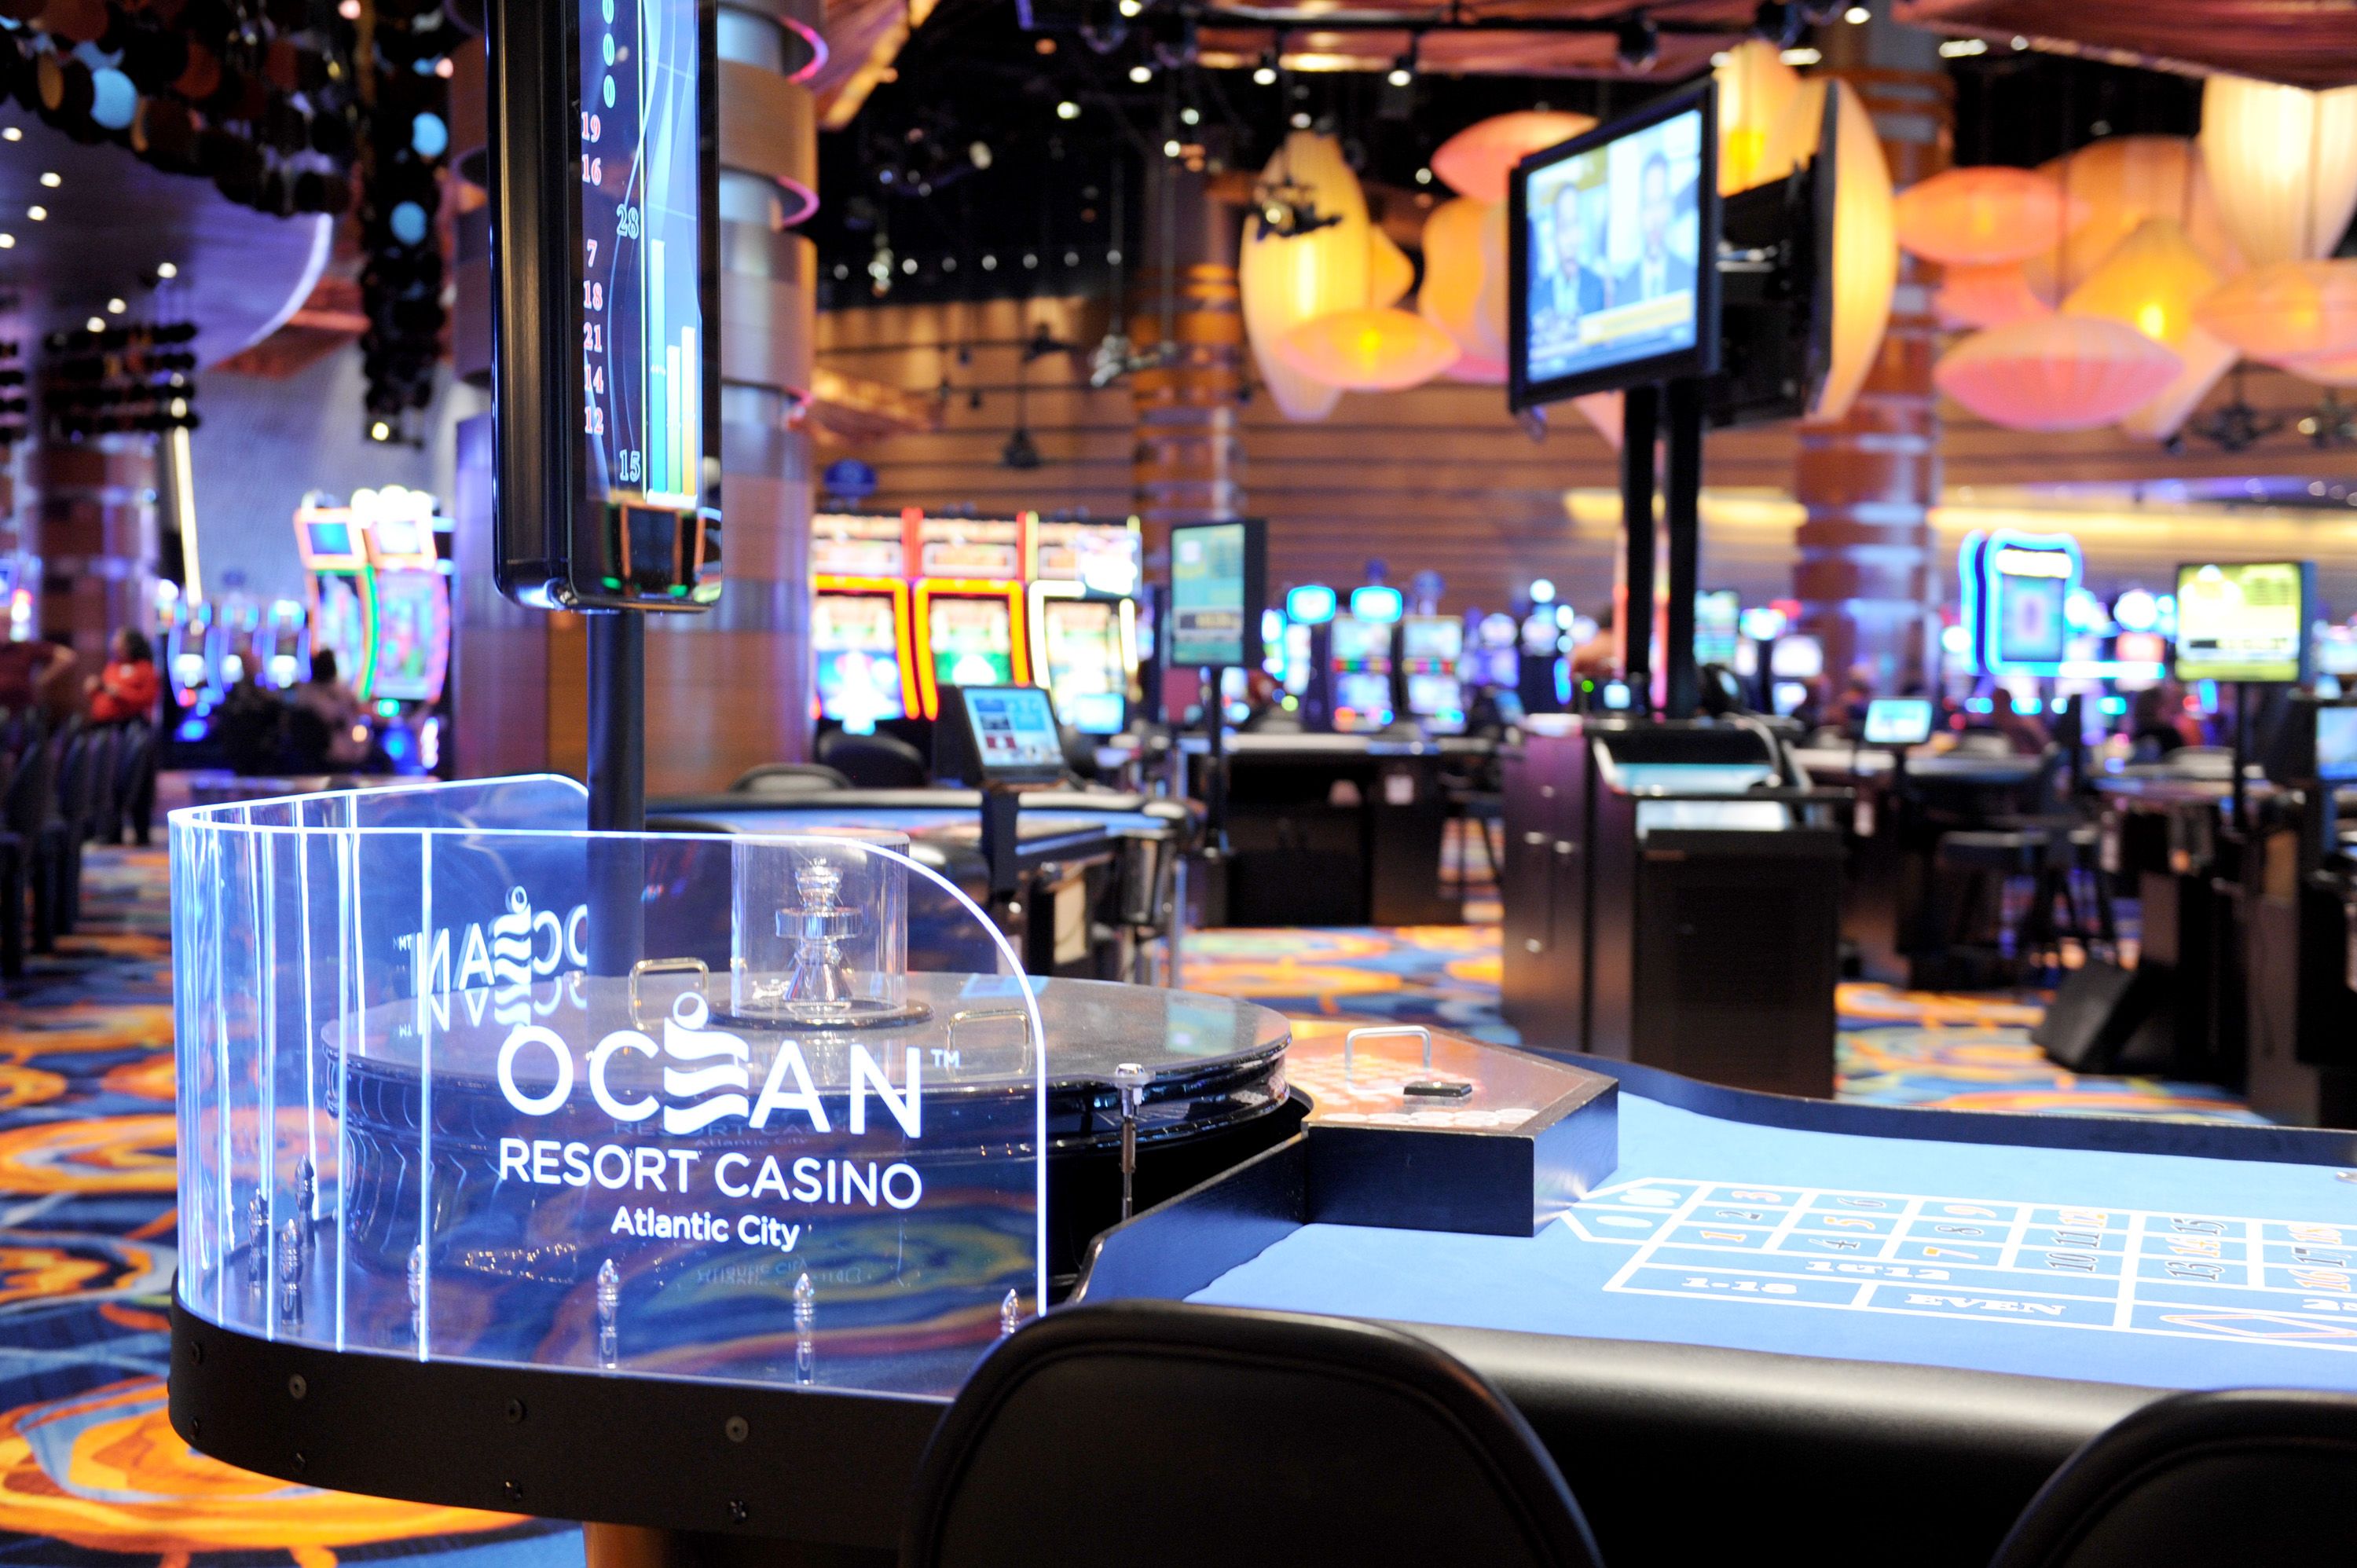 oceans casino